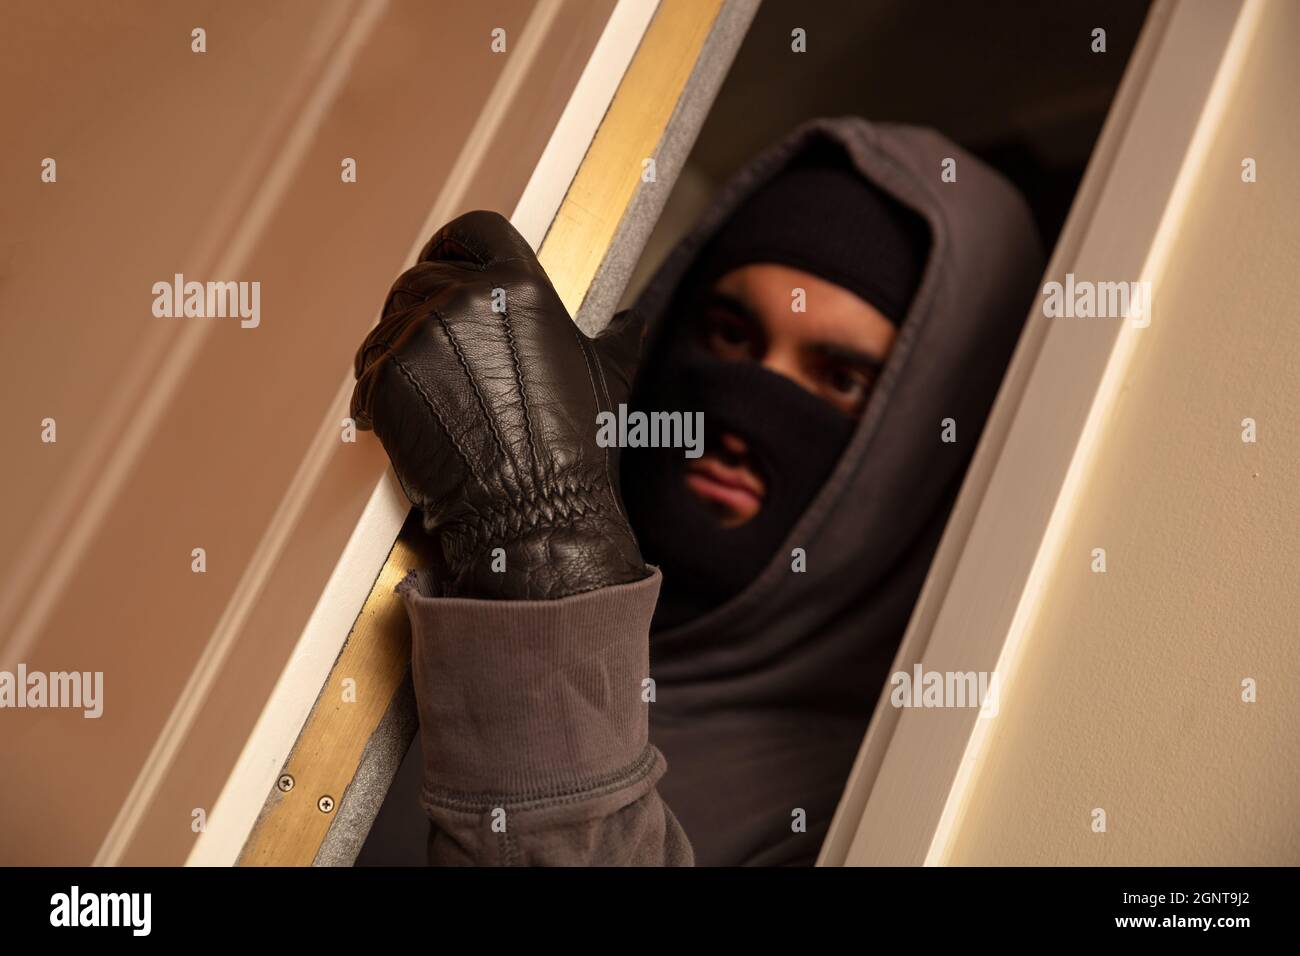 Housebreaking, burglary concetto. Mascherato burglar in balaclava nera aprendo la porta, entrando illegalmente la casa Foto Stock